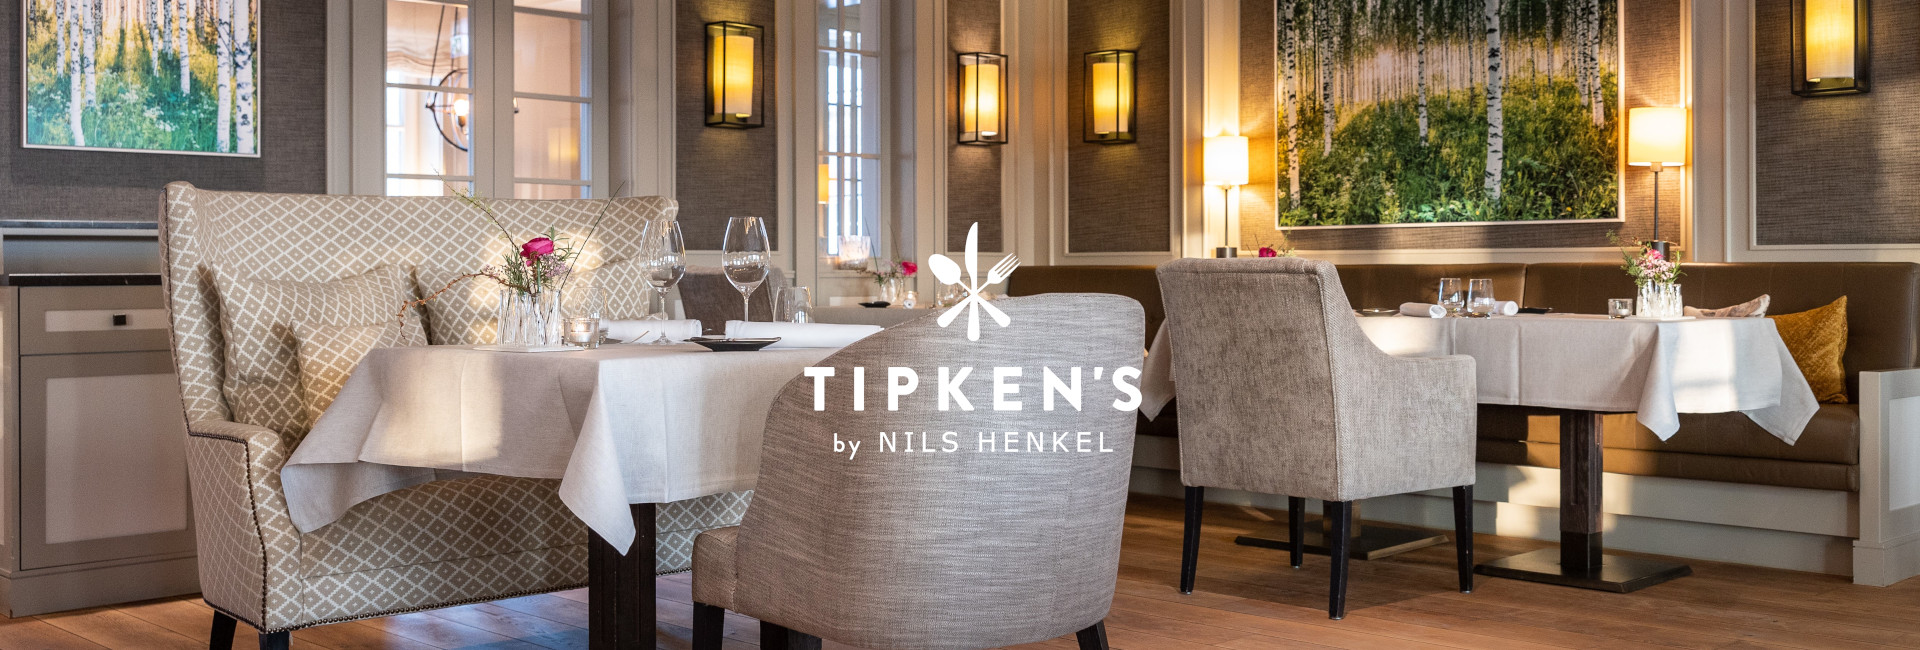 Gemütliche Atmosphäre im Restaurant Tipken's by Nils Henkel | Severin*s Resort & Spa Sylt